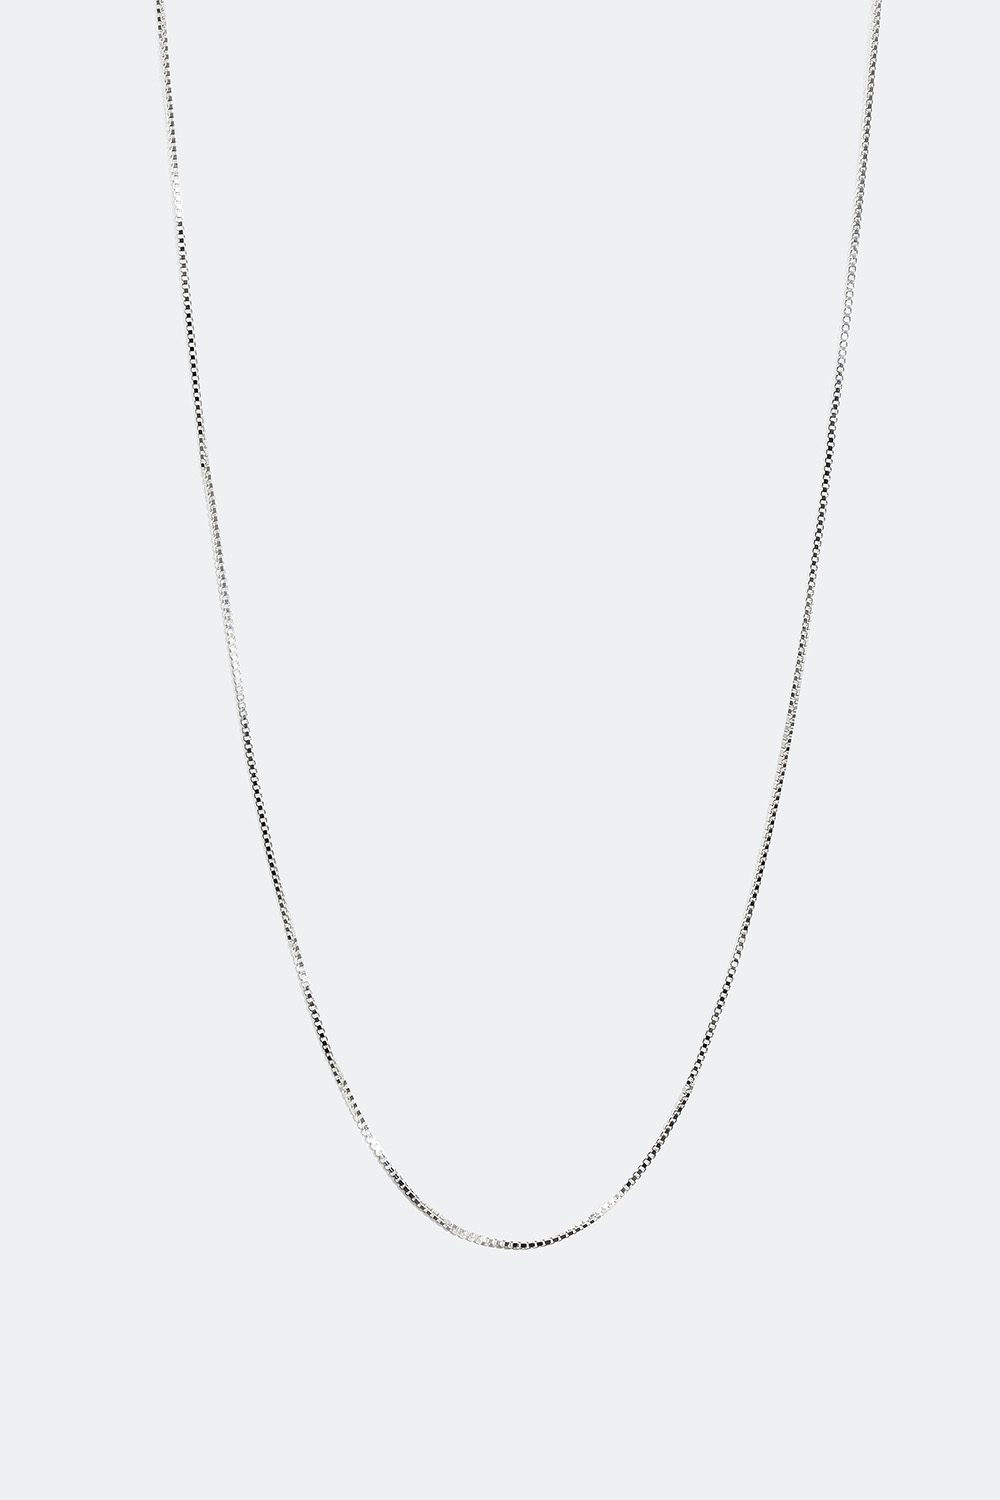 Venetiansk halskedja i äkta silver, 55 cm i gruppen Äkta silver / Silverhalsband / Halskedjor i äkta silver hos Glitter (554000371060)